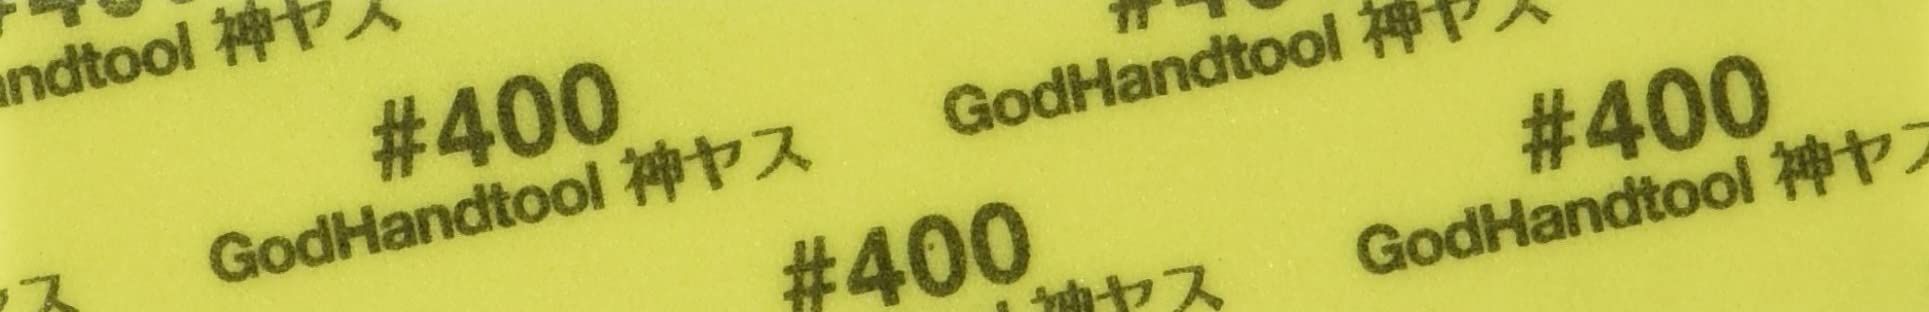 Godhand God File ! Lime en tissu éponge 2 mm d'épaisseur env. 105 x 20 mm #400 5 pièces Gh-Ks2-P400